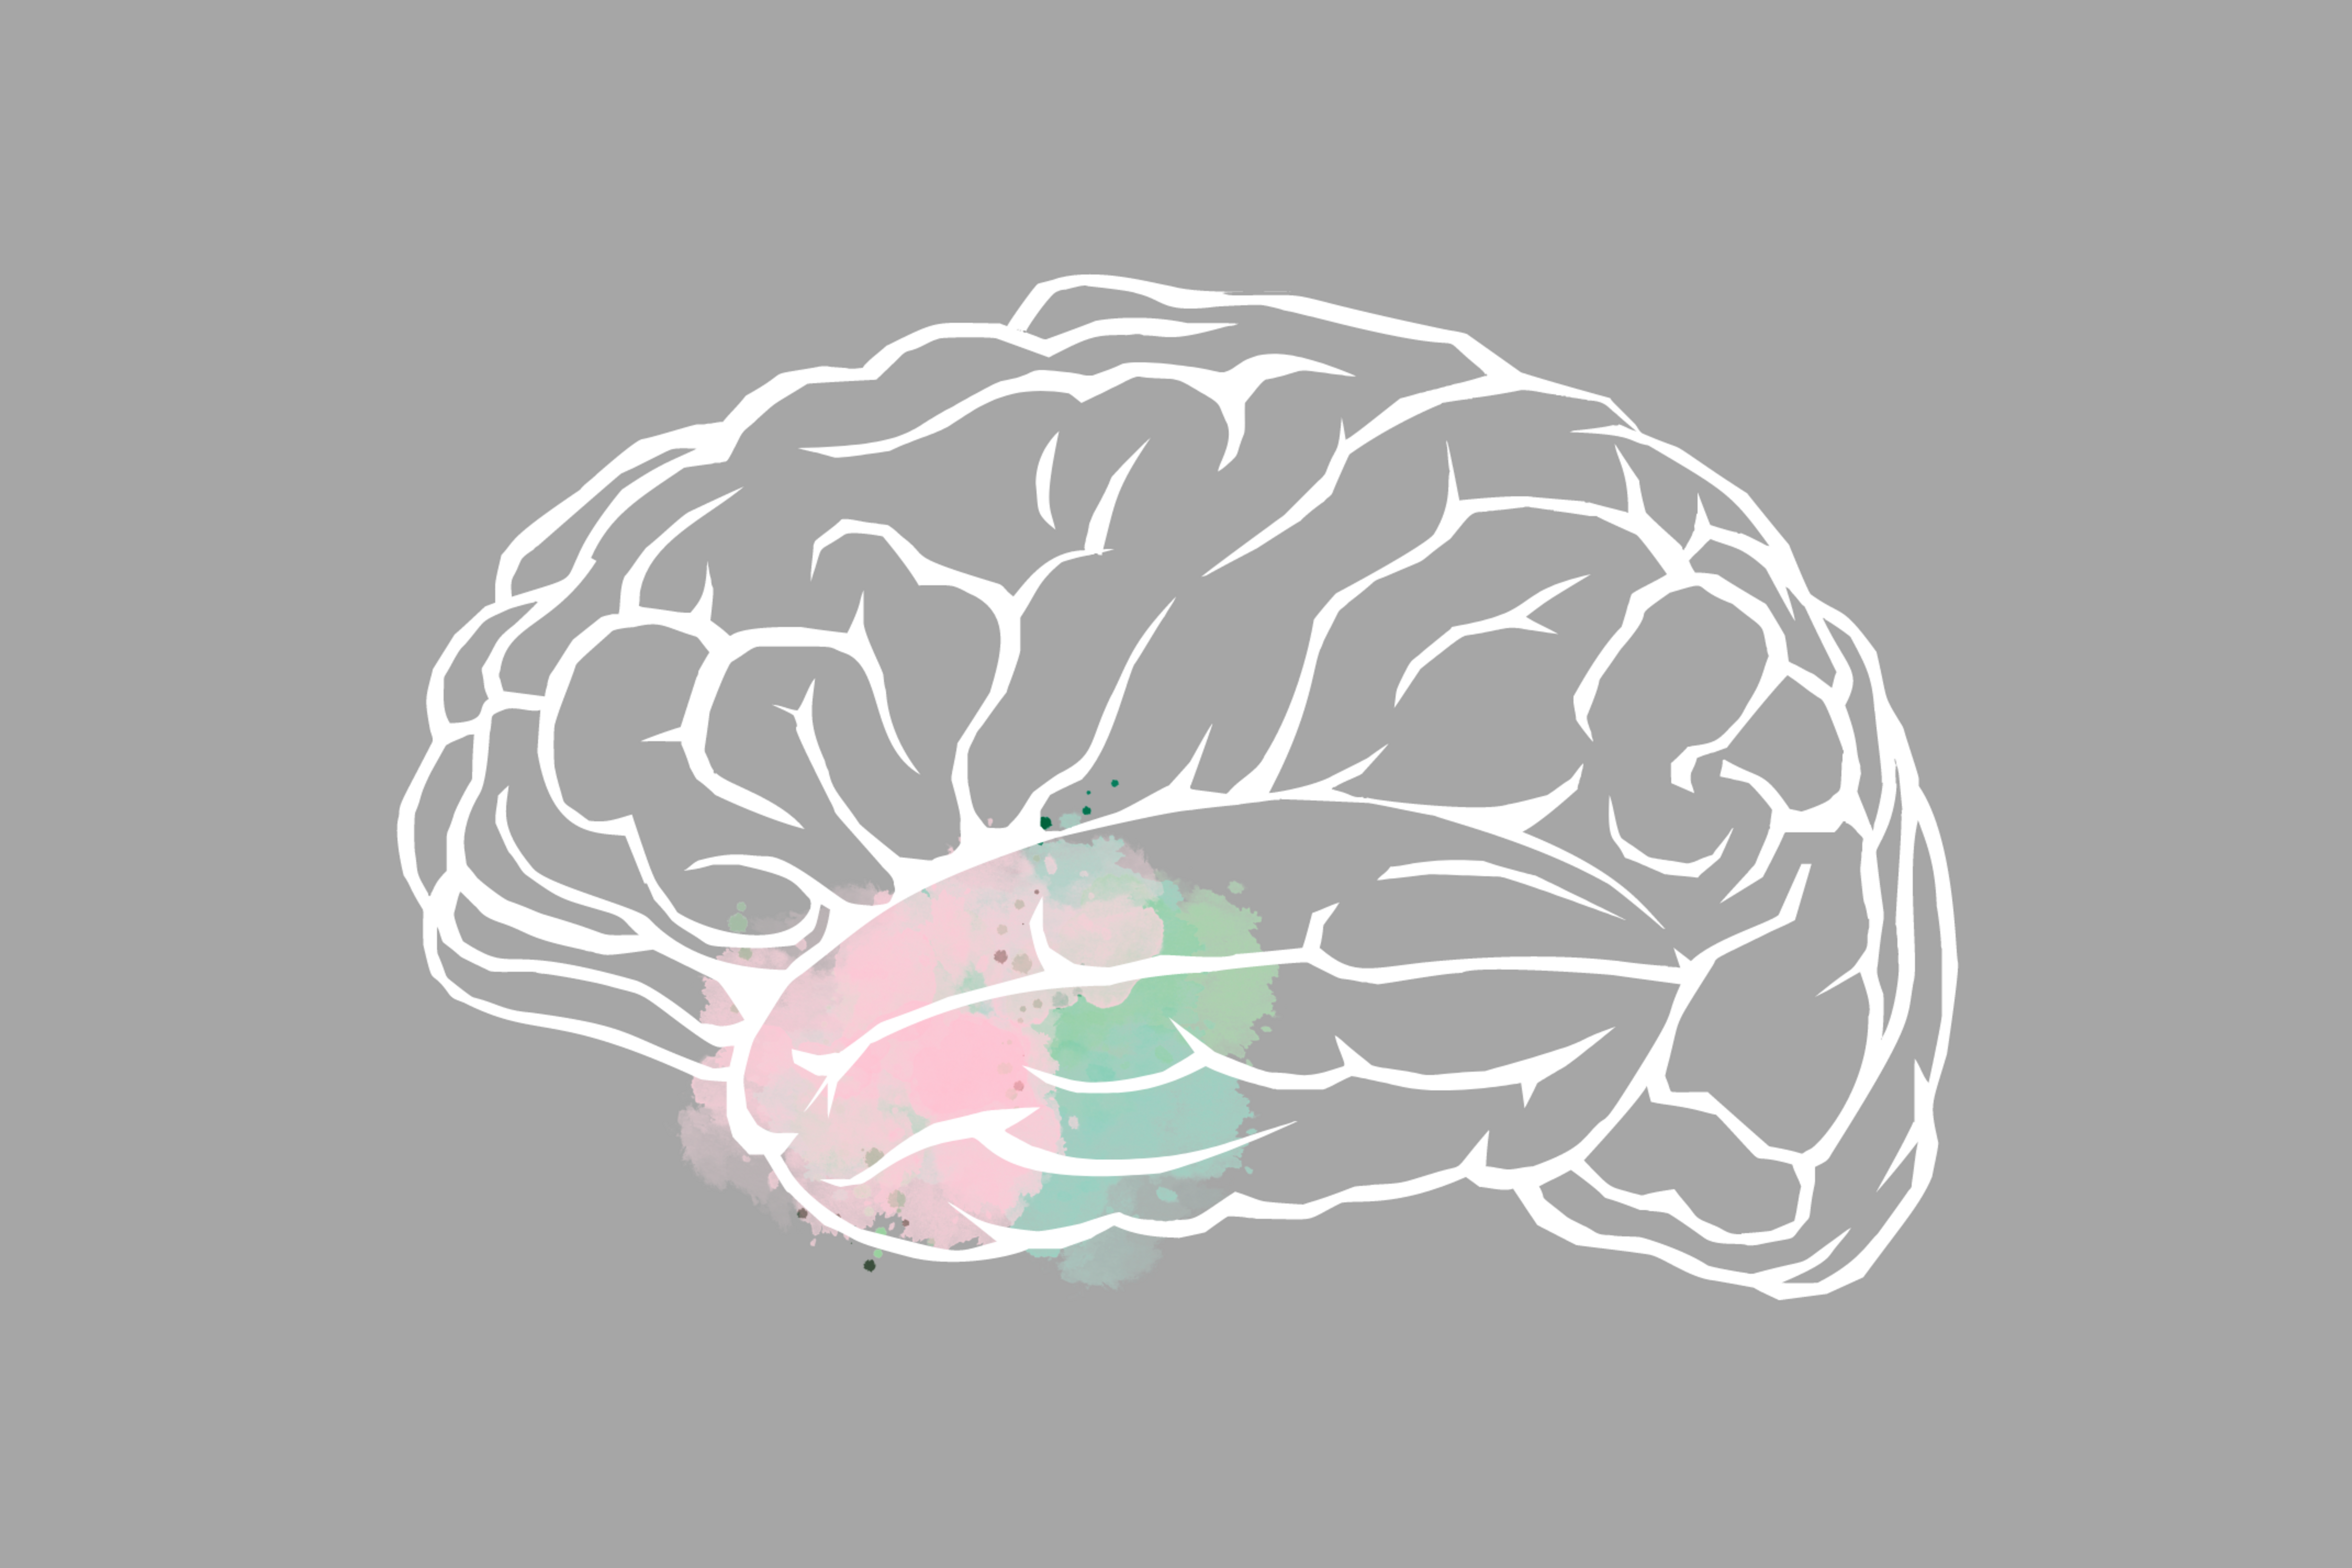 Bild eines Gehirns mit eingefärbter Amygdala